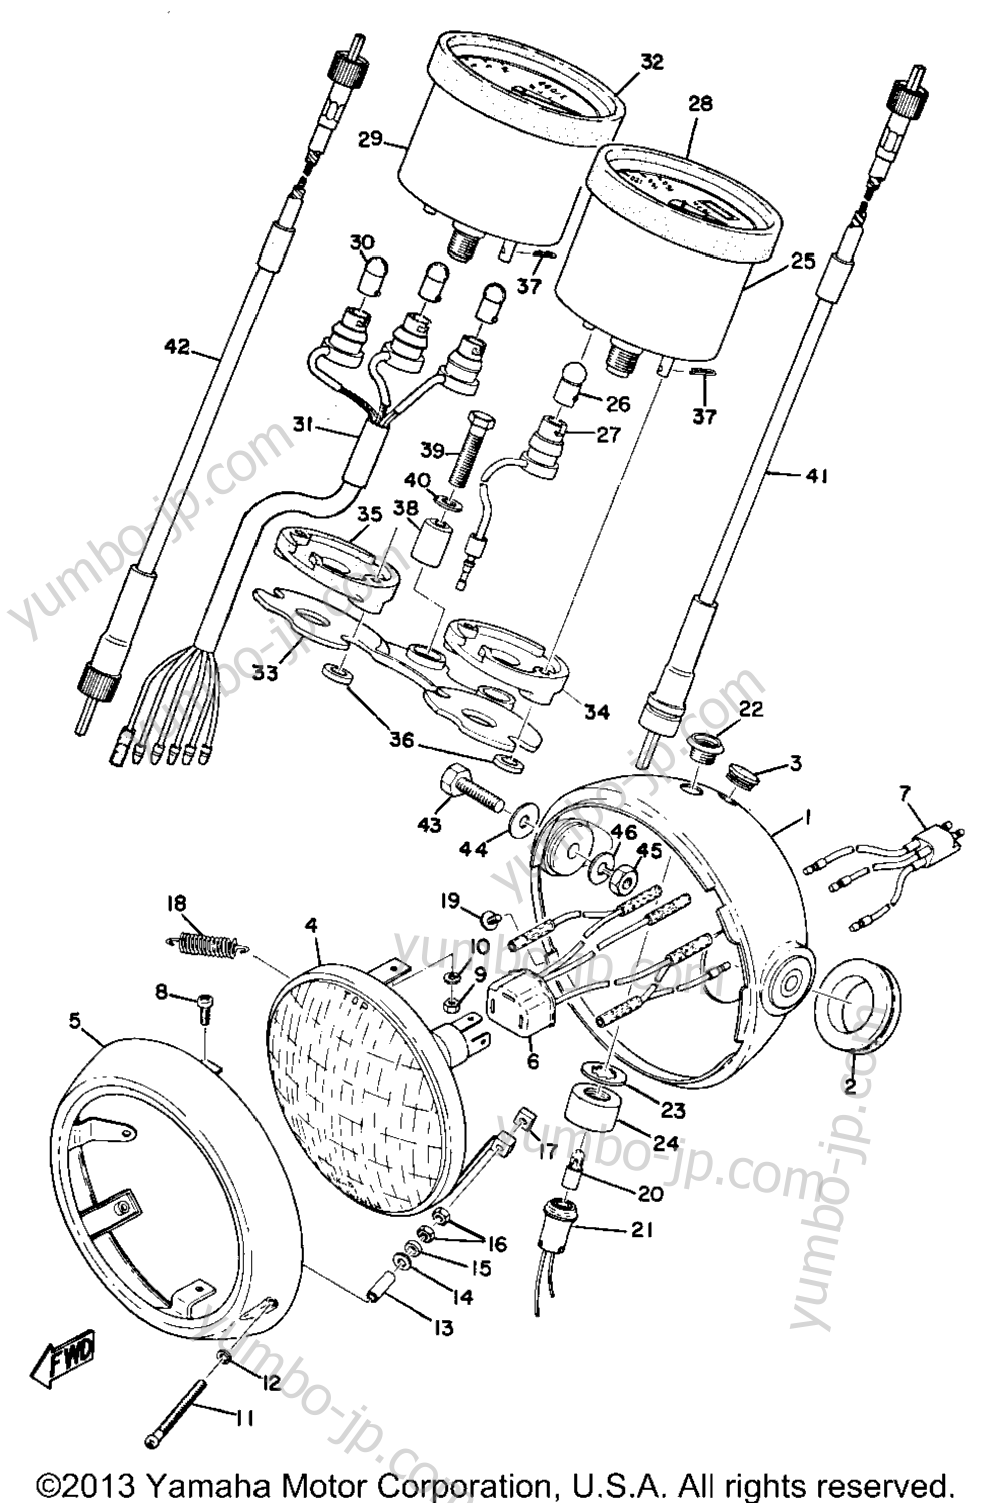 Head Lamp, Speedometer & Tachometer (Ct1c) for motorcycles YAMAHA CT1C CA 1971 year